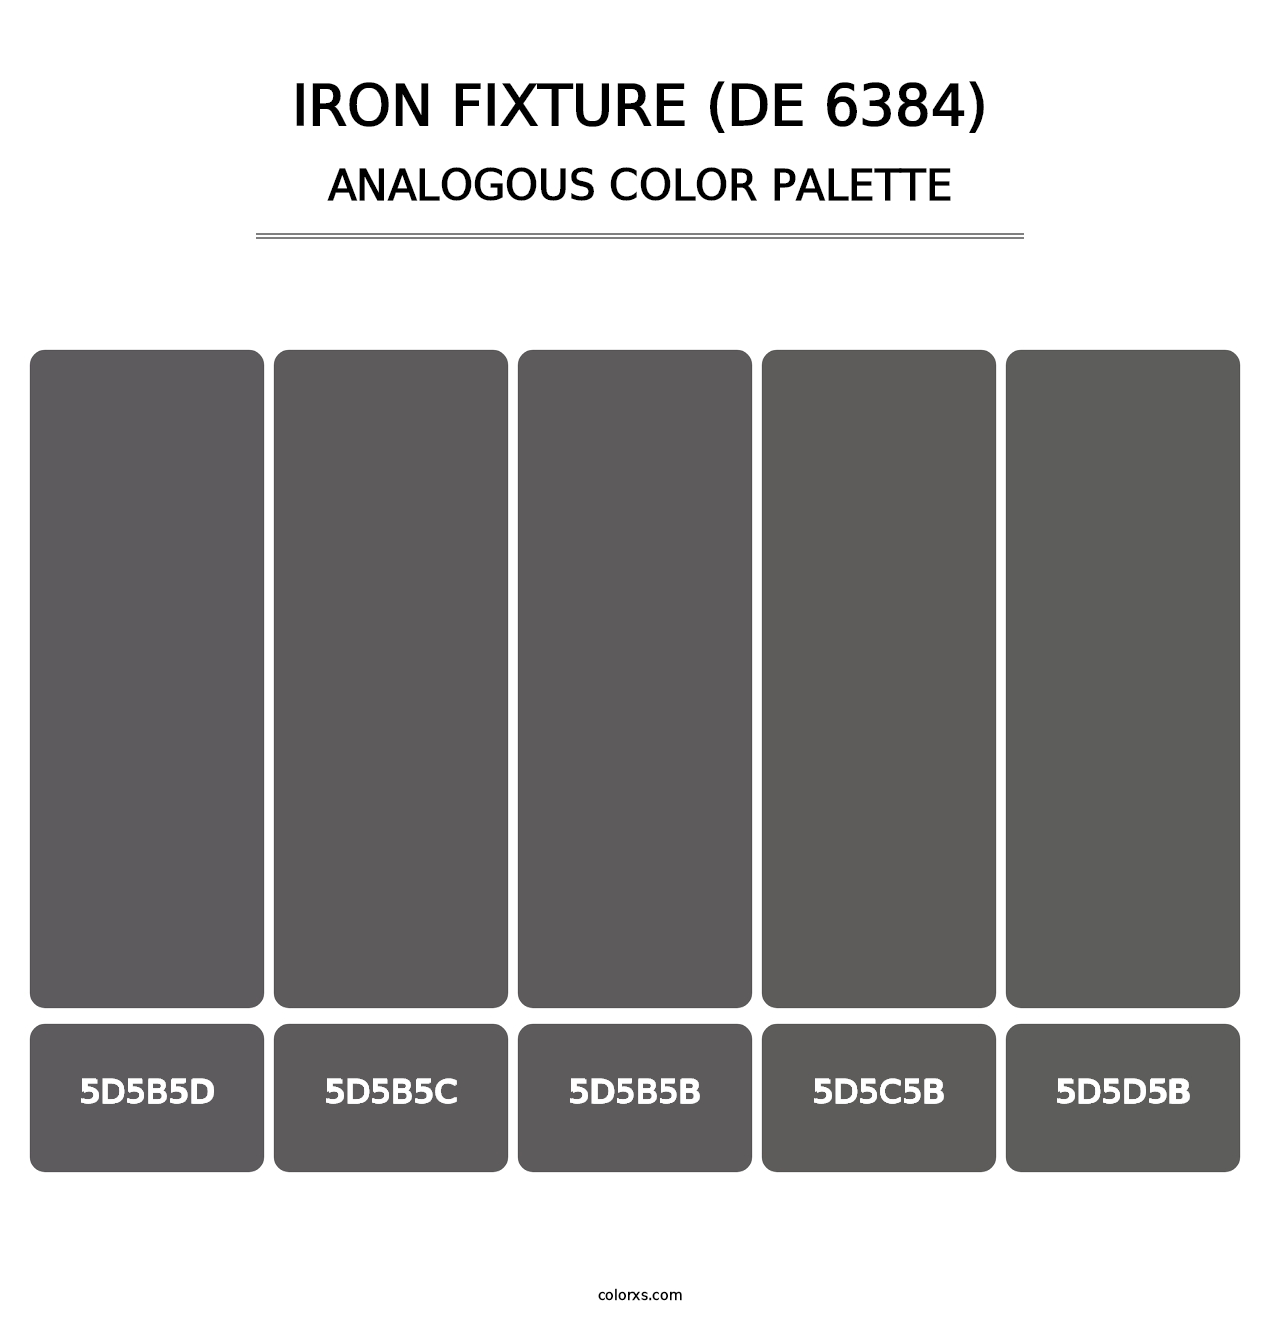 Iron Fixture (DE 6384) - Analogous Color Palette